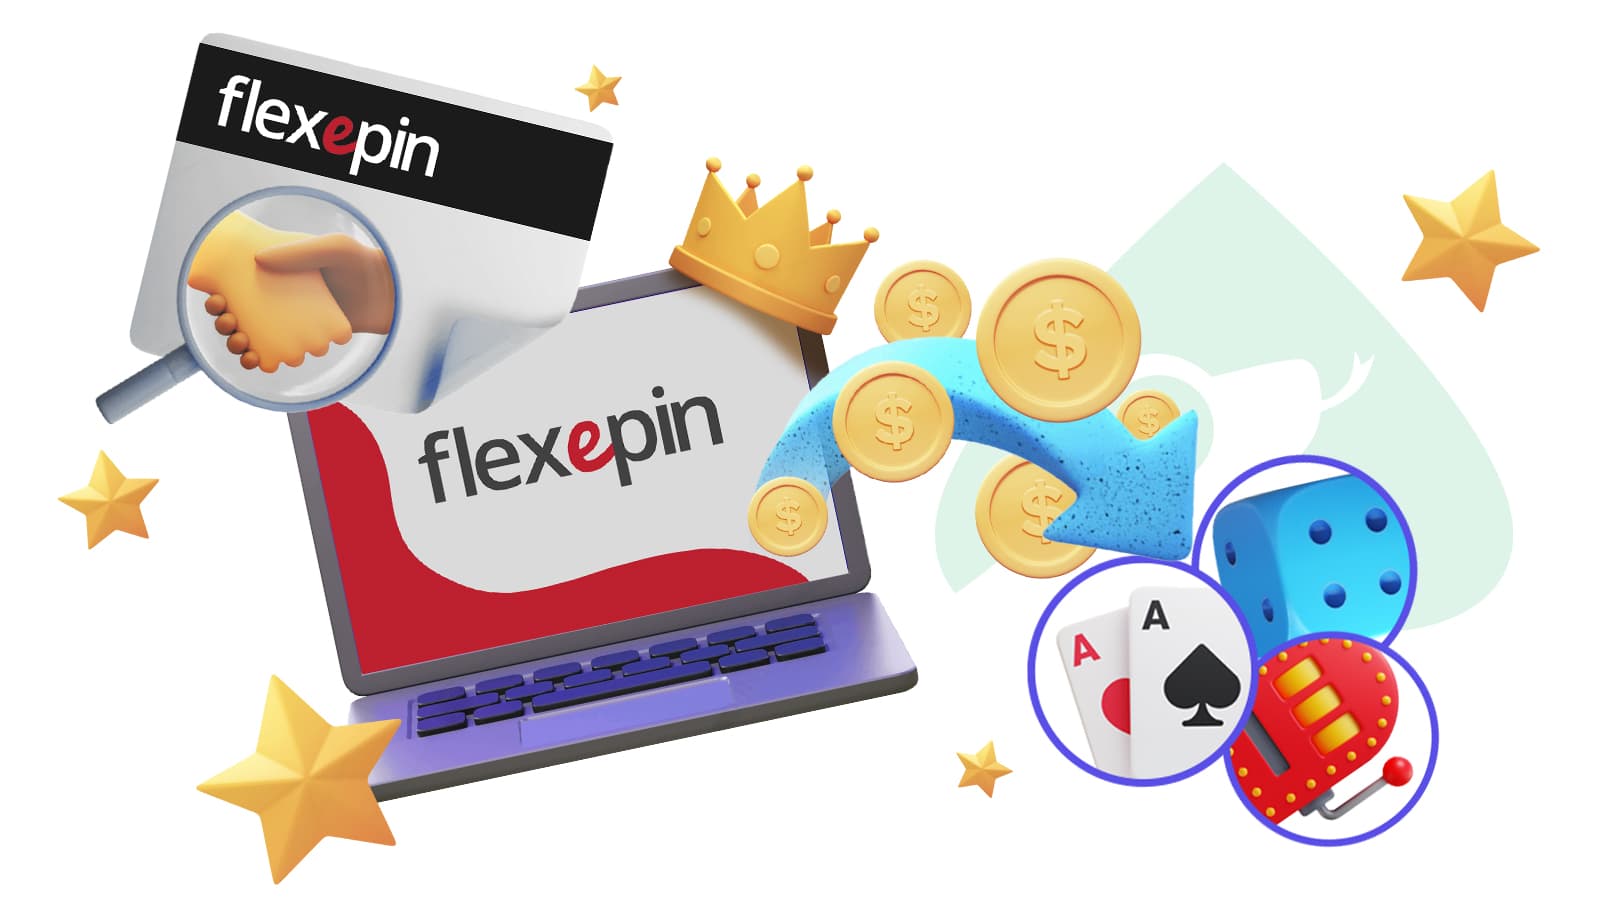 flexepin online casinos